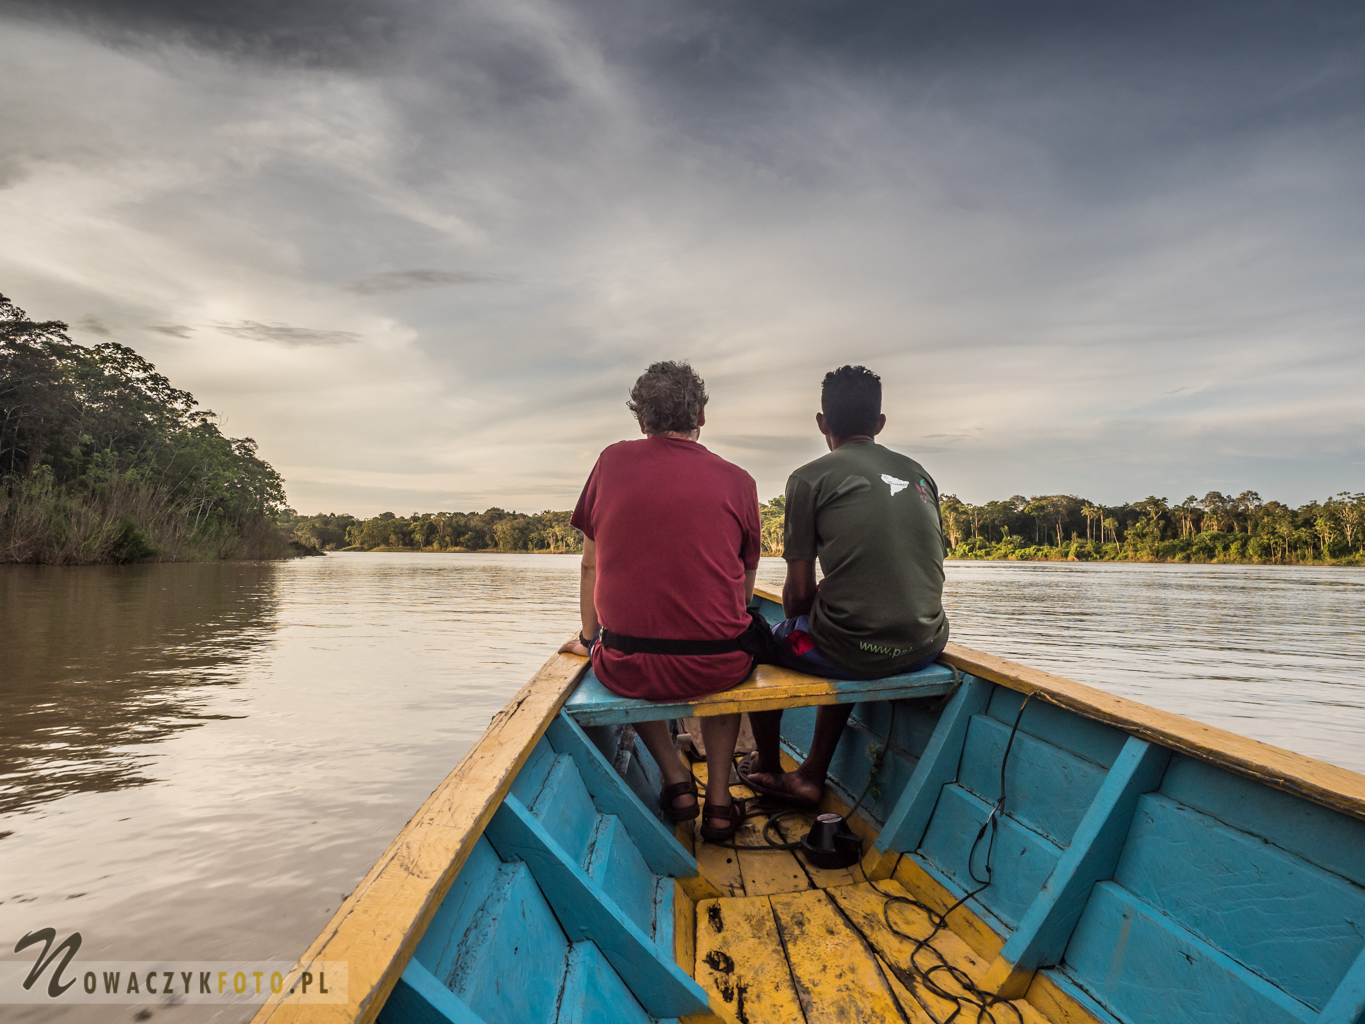 Dwóch panów siedzi na czubku łodzi i patrzy przed siebie na dżunglę i rzekę